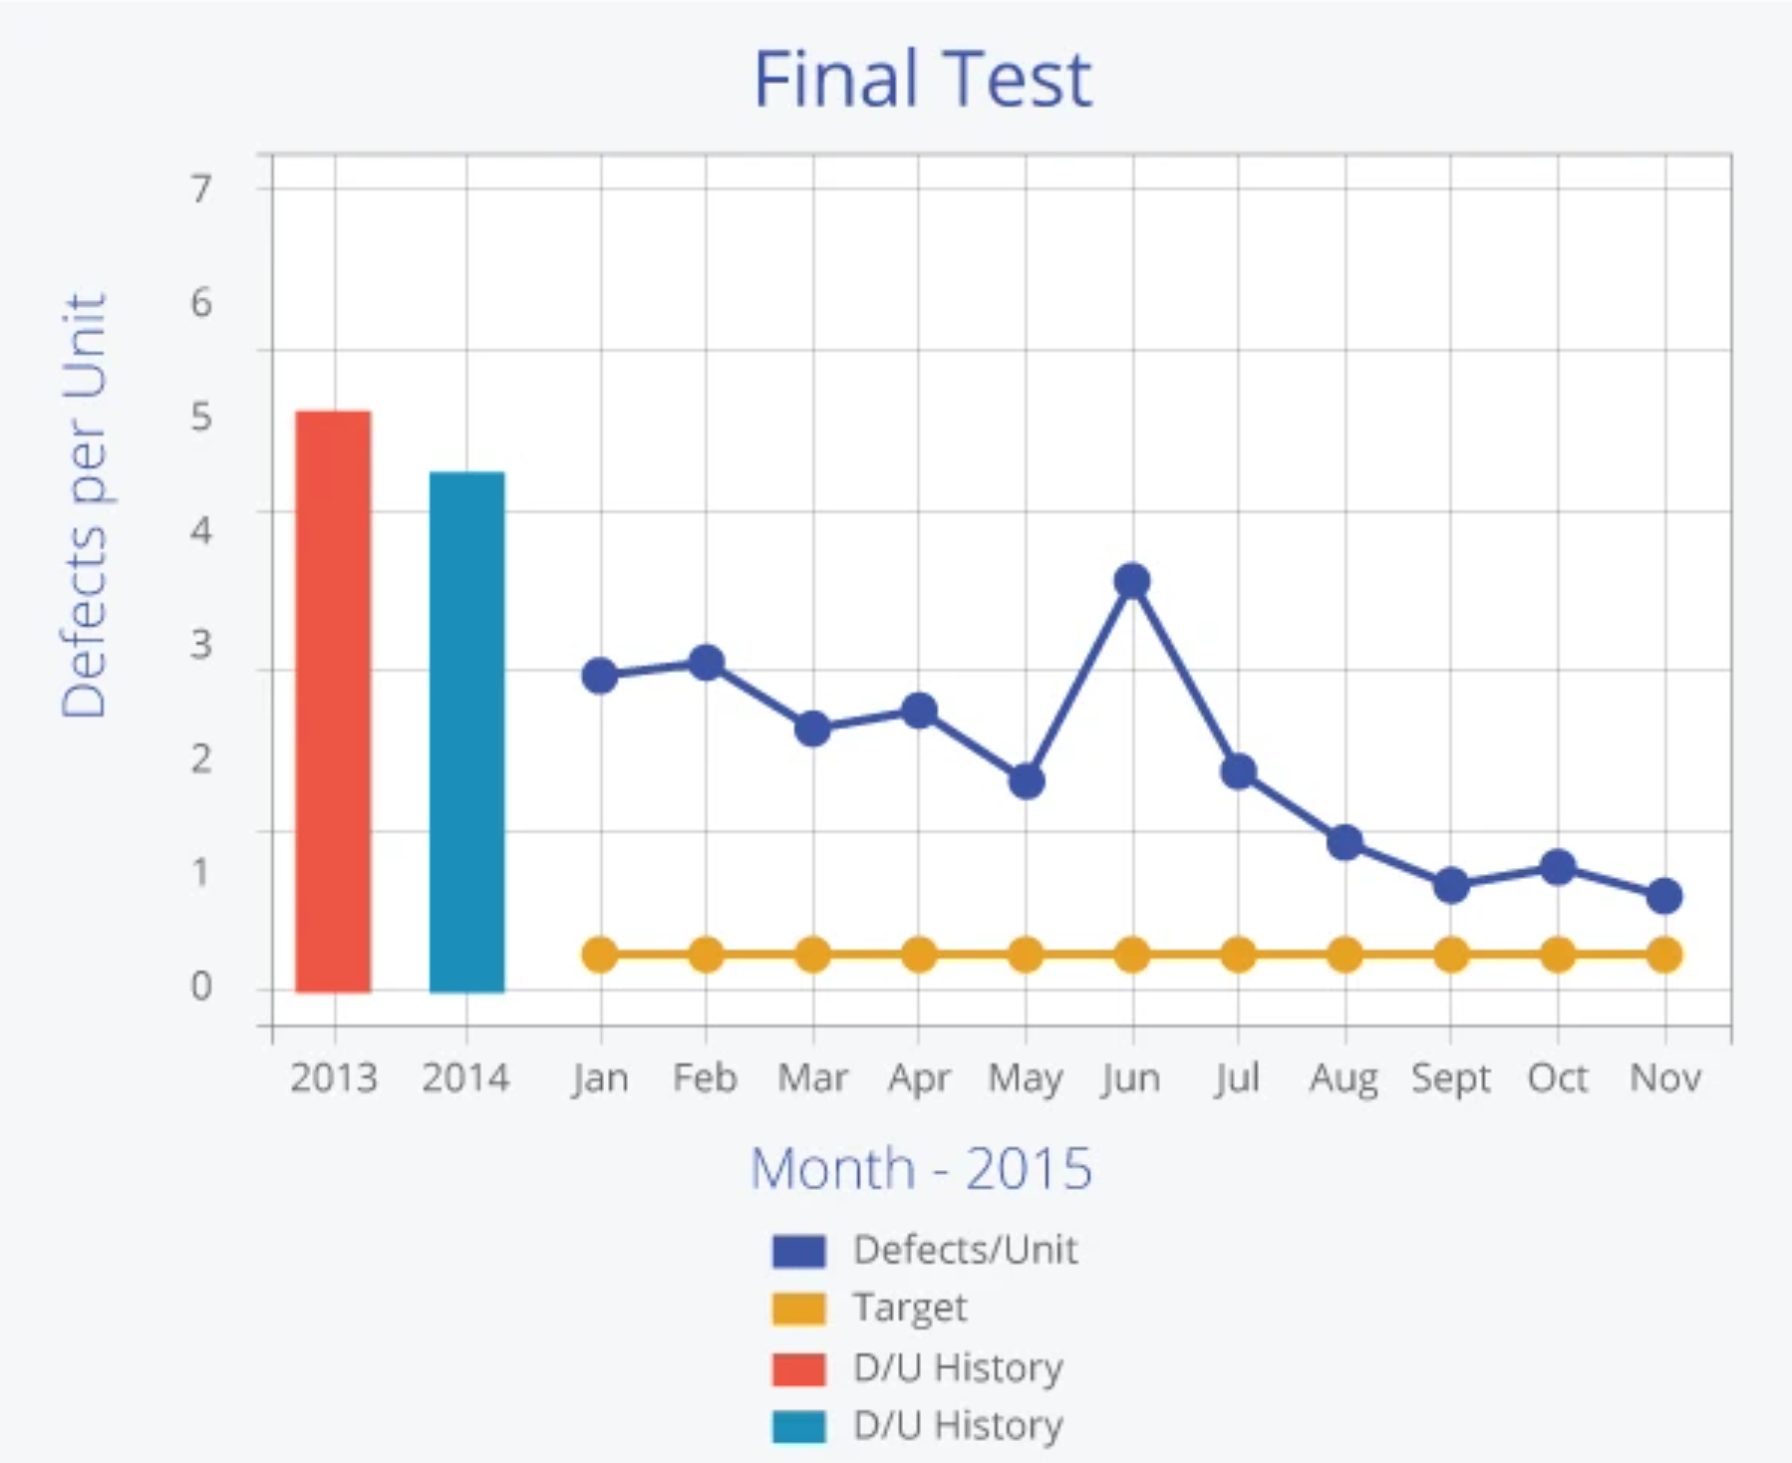 Final Test Chart 2 -- Defects per unit vs. Months